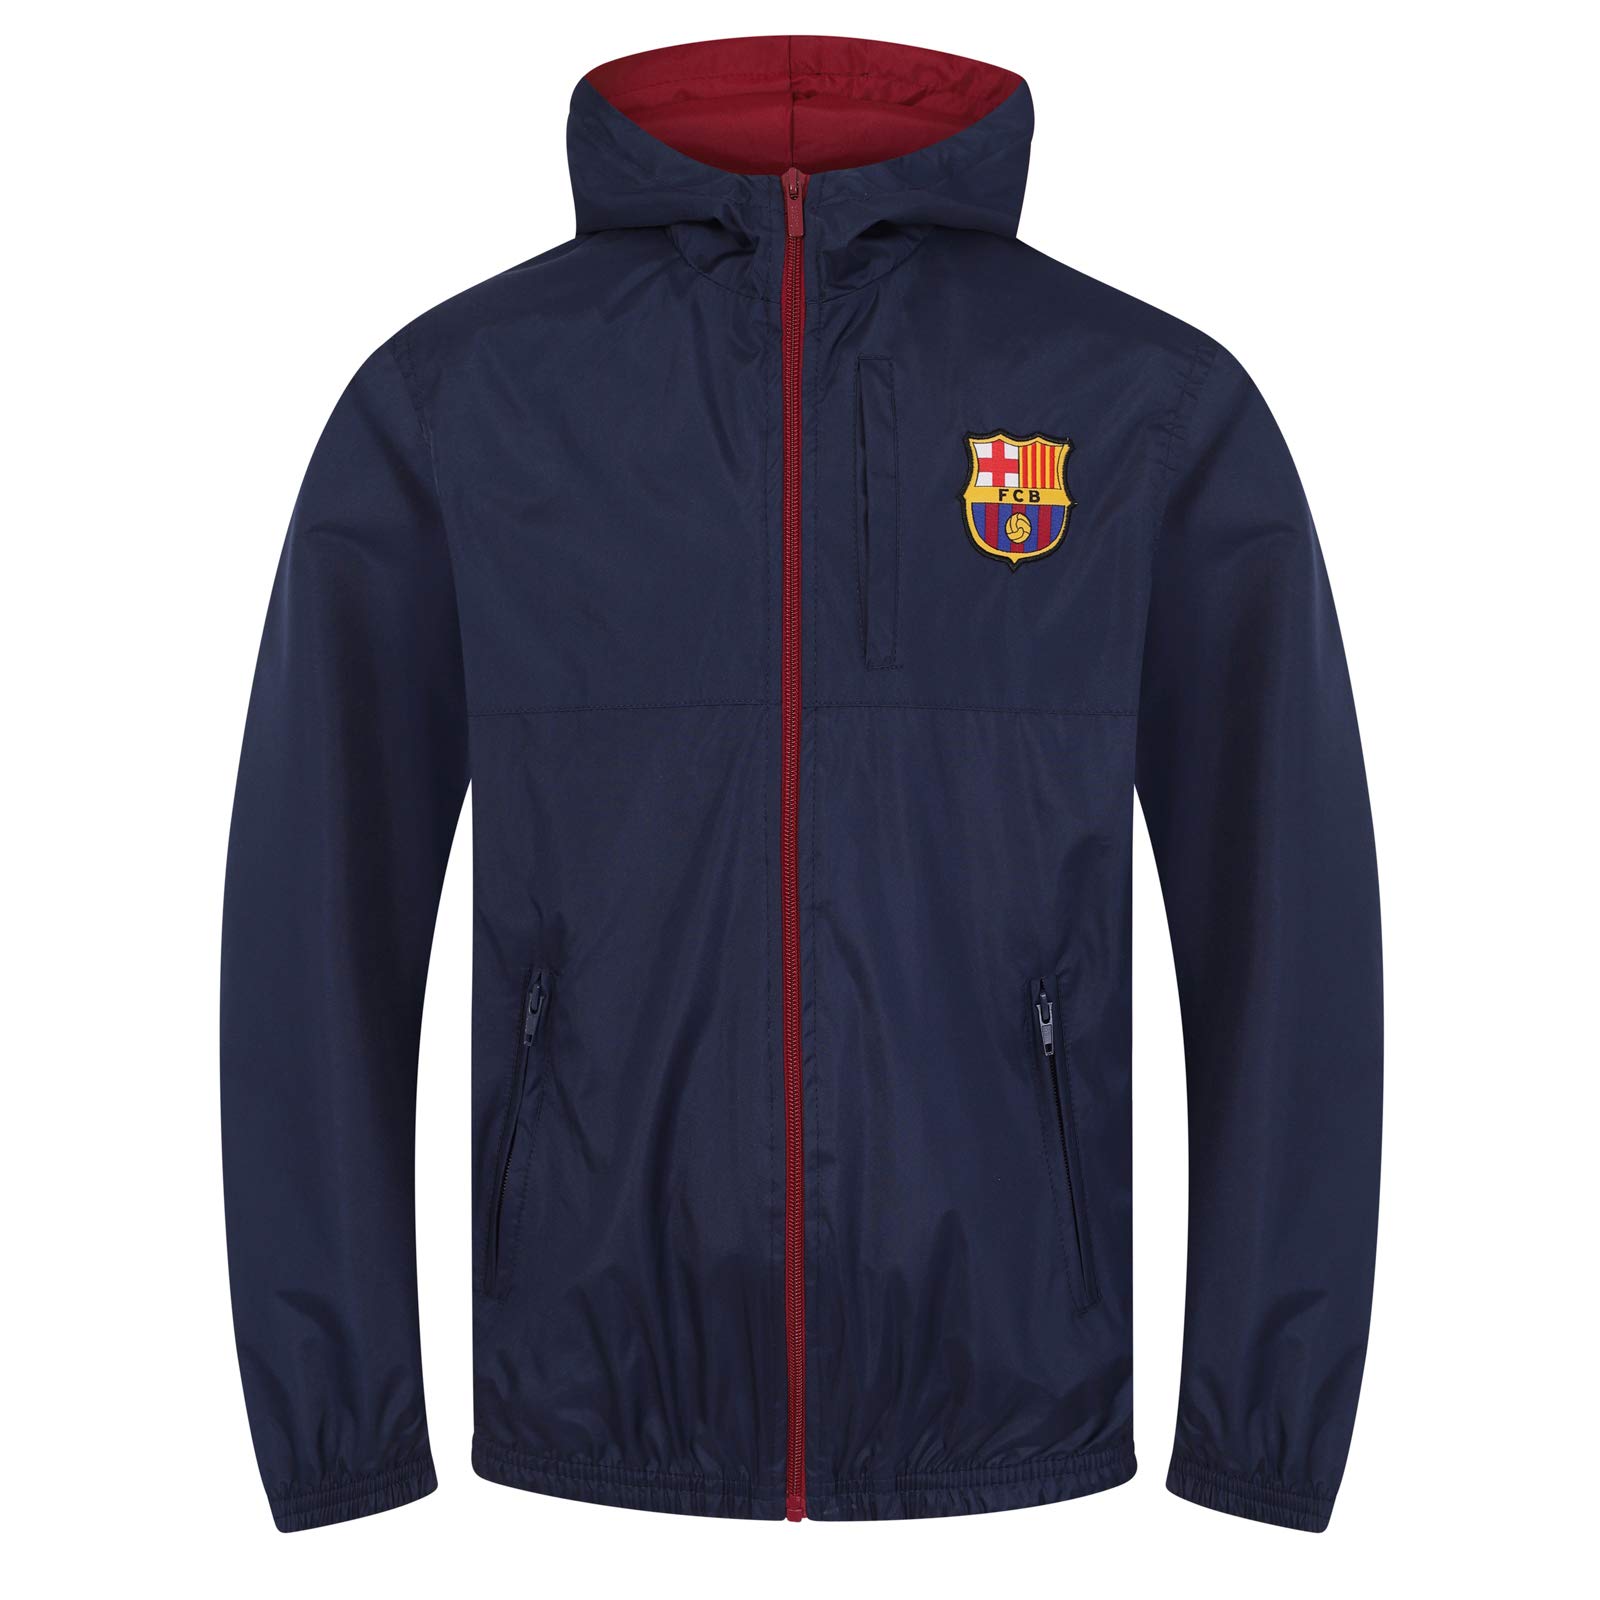 FC Barcelona - Jungen Wind- und Regenjacke - Offizielles Merchandise - Geschenk für Fußballfans - 6-7 Jahre